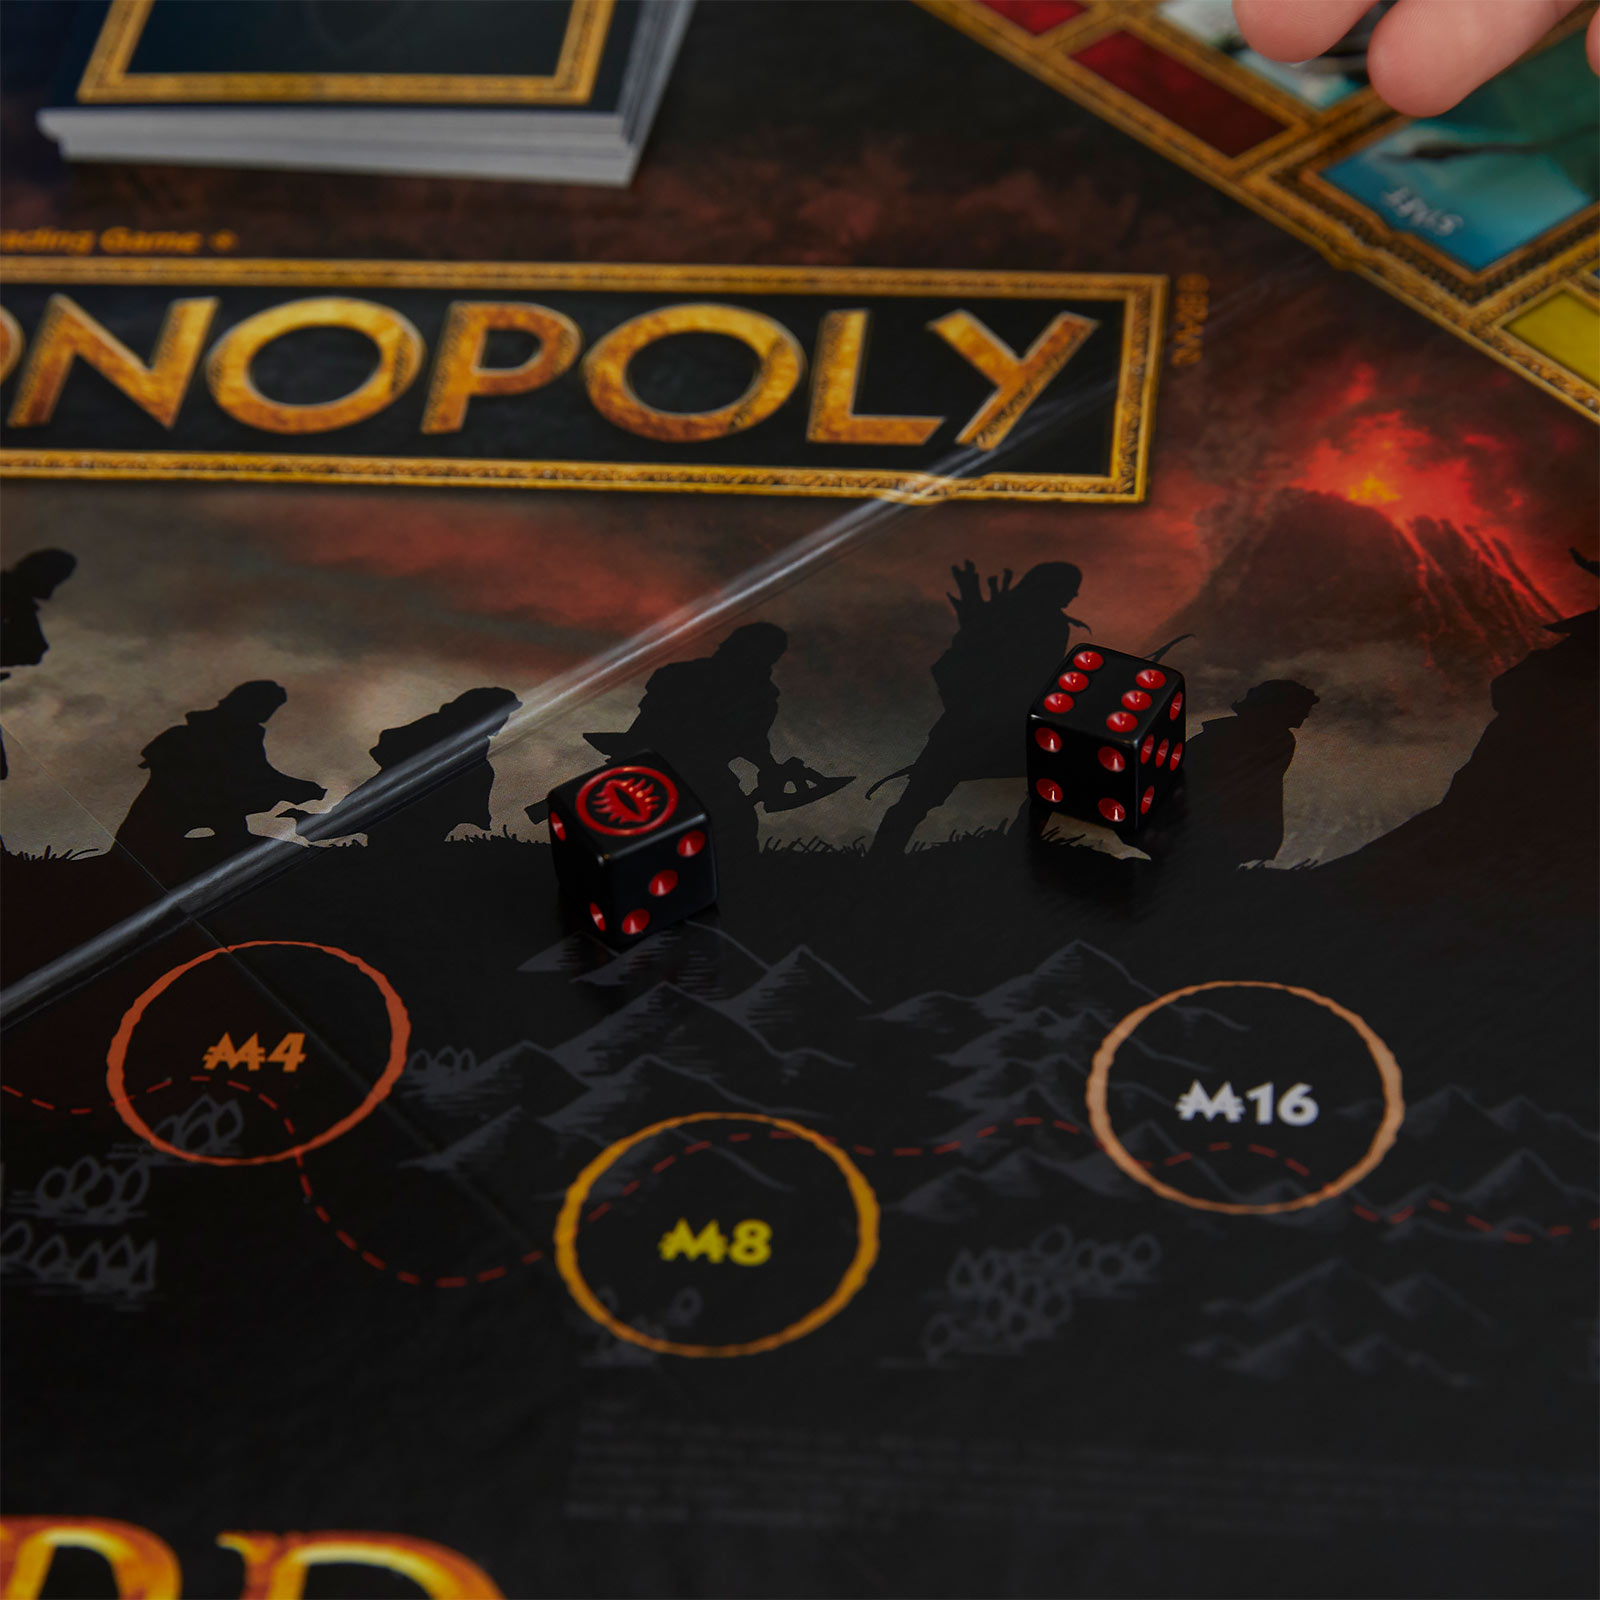 Heer der Ringen - Monopoly